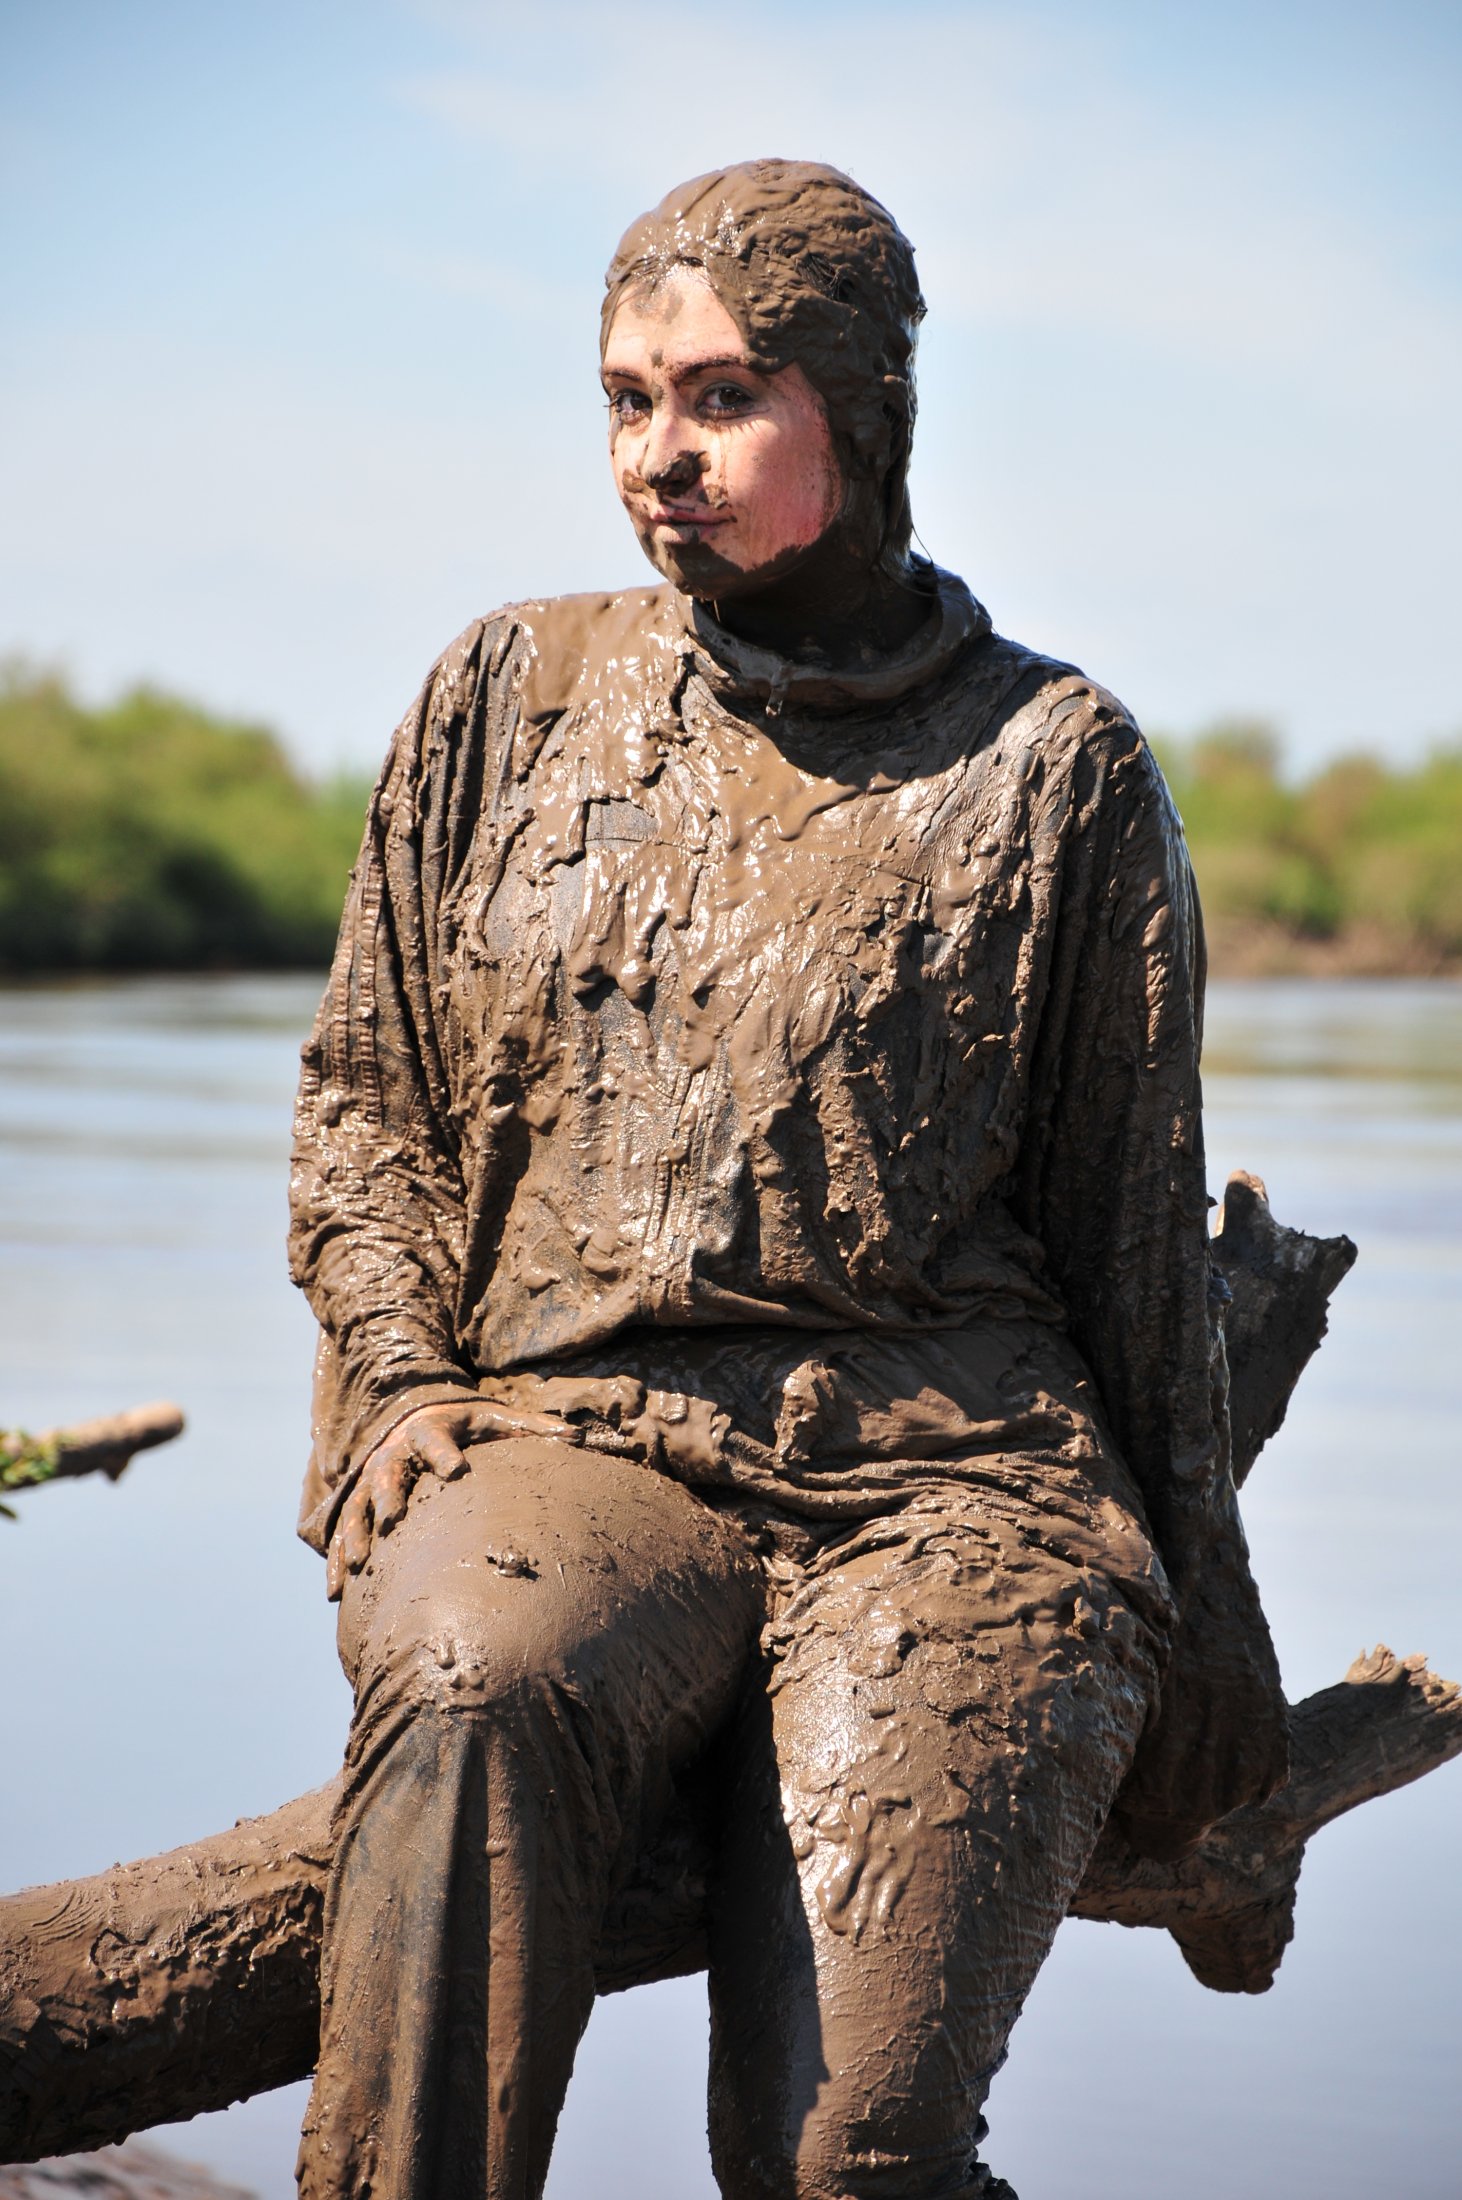 Adidas jumpsuit in mud